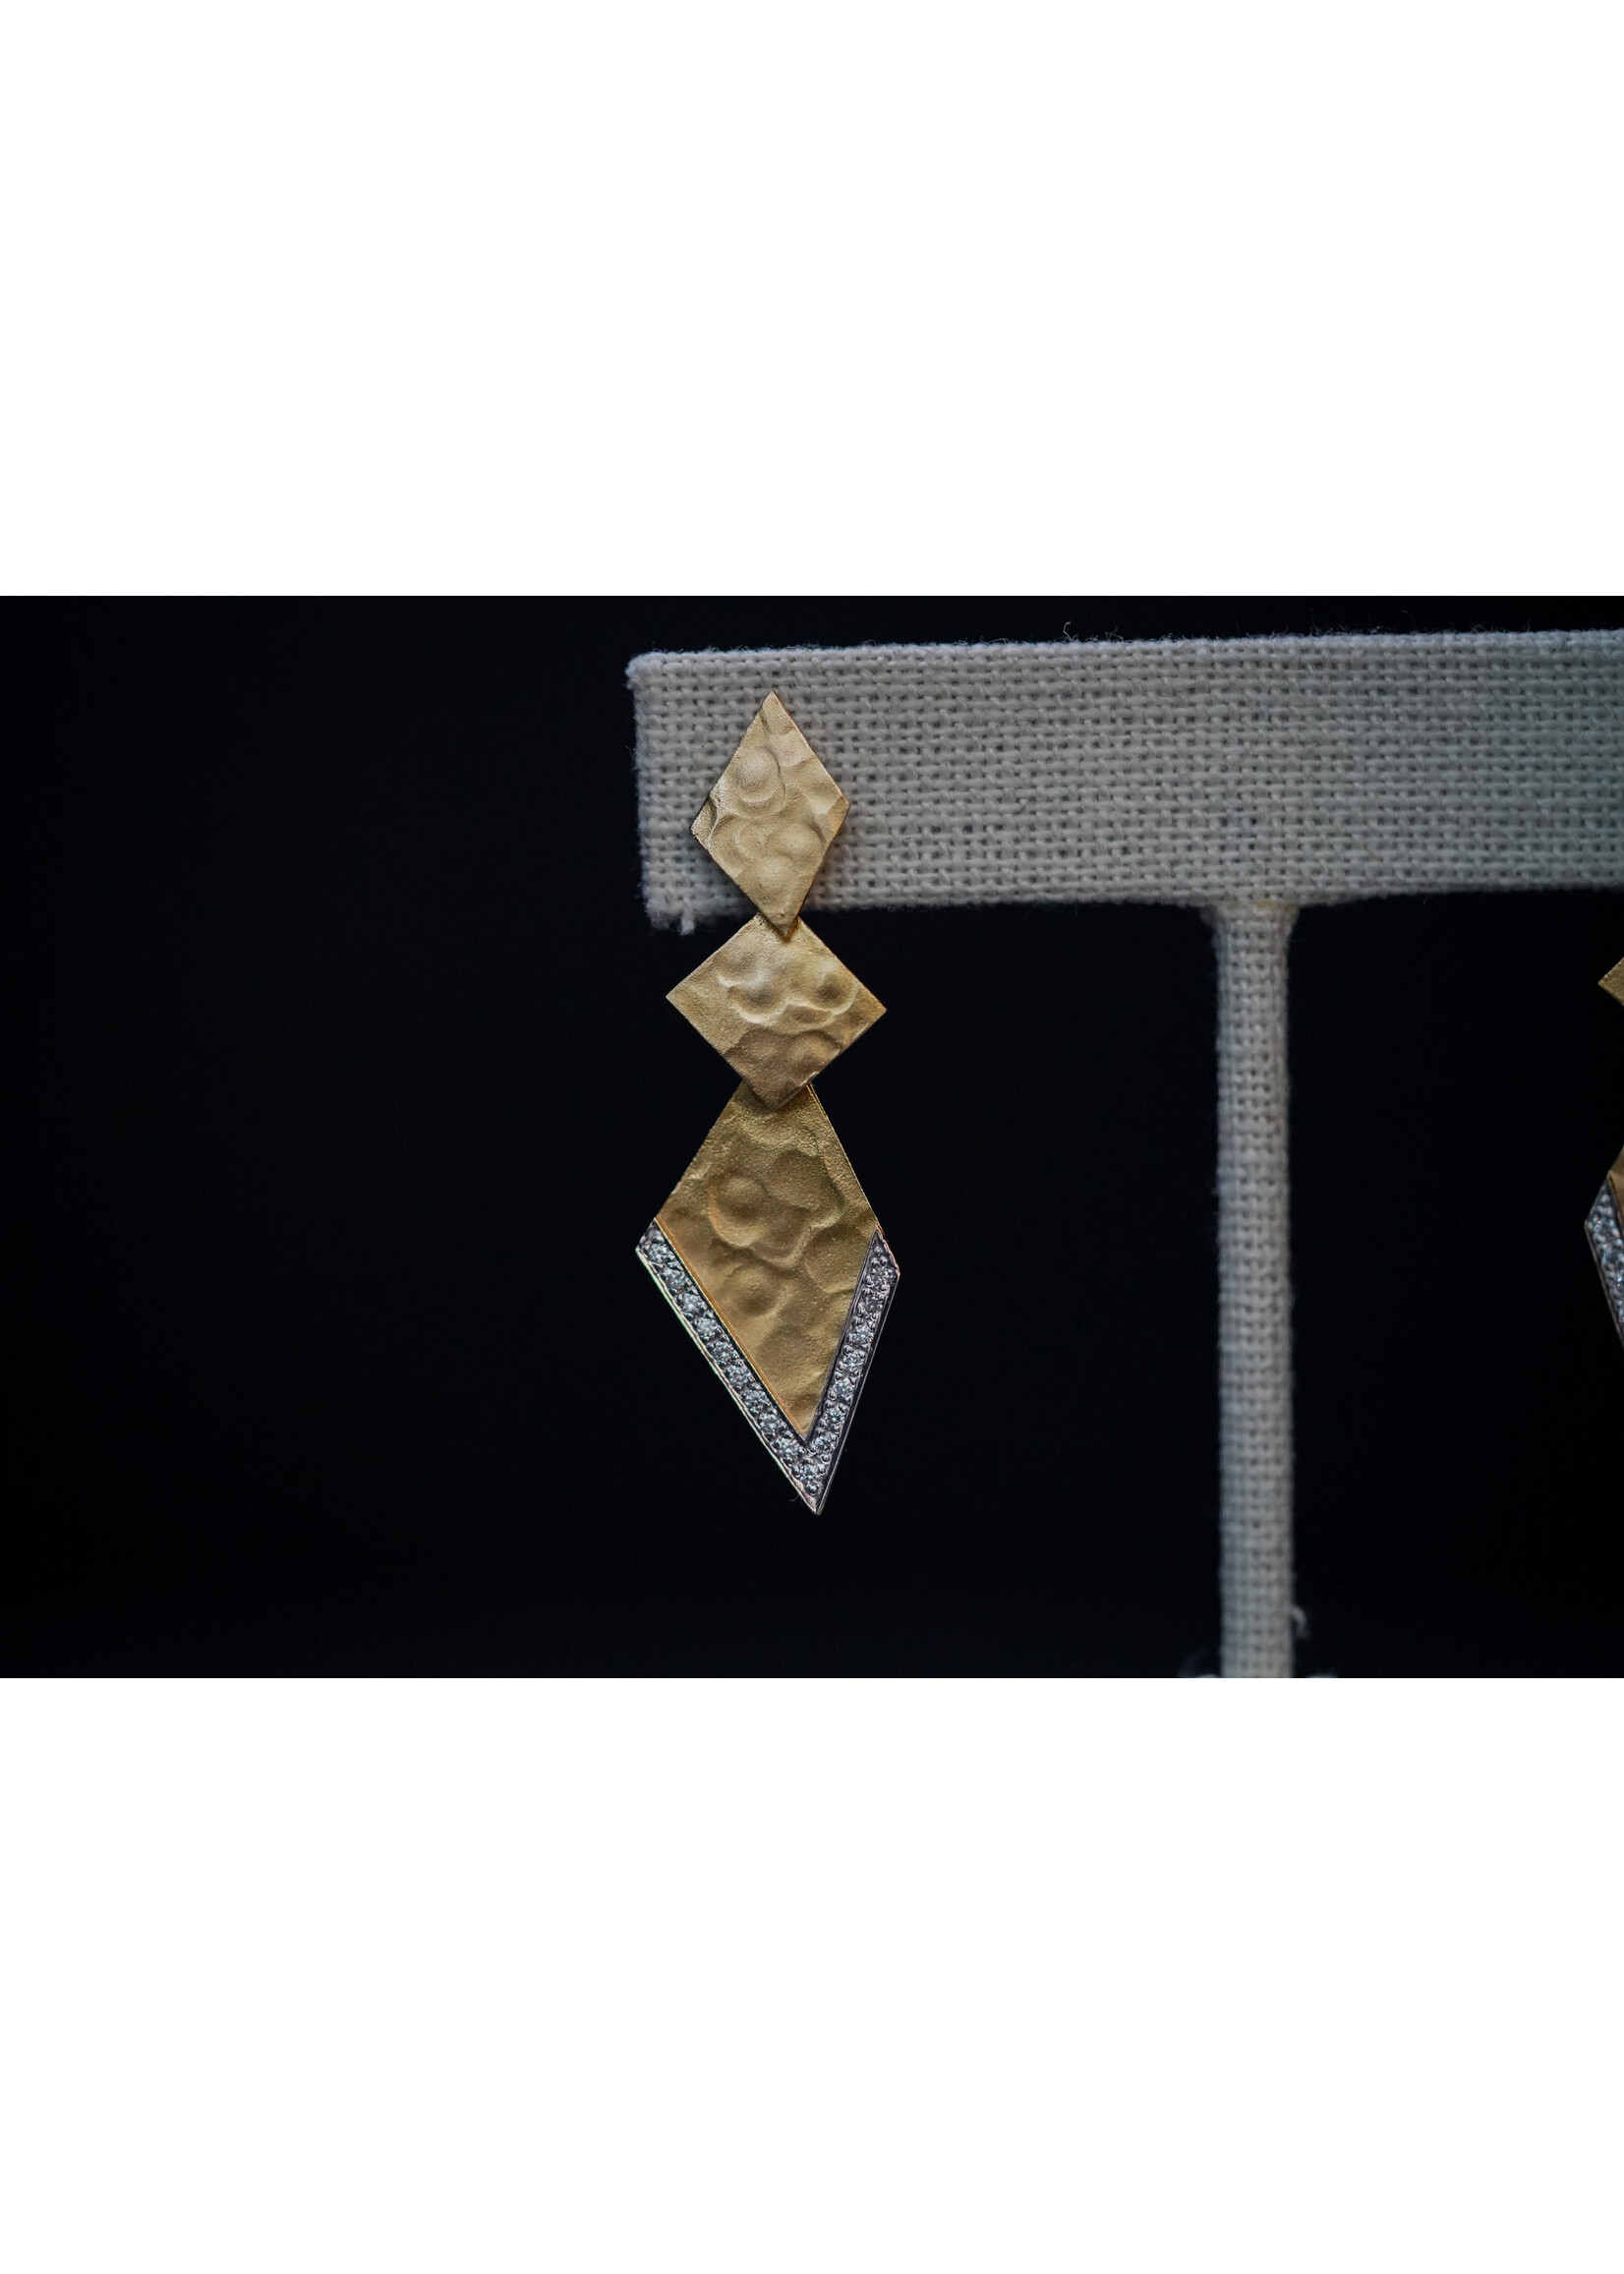 18KWY 5.20g .32ctw Diamond Geometric Dangle Earrings